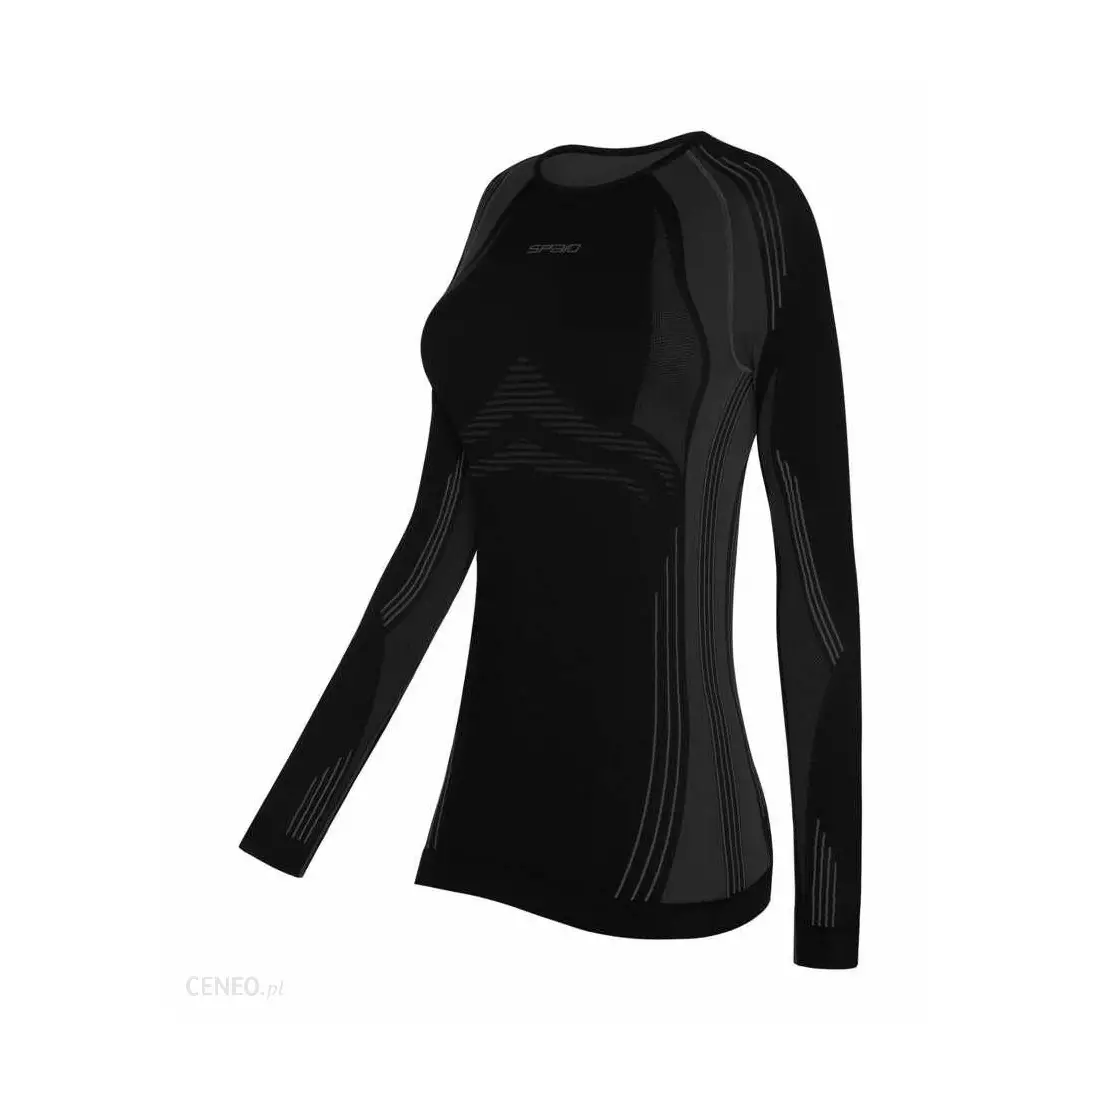 SPAIO termoaktívne spodné prádlo, dámske tričko POWERFUL čierno-šedé